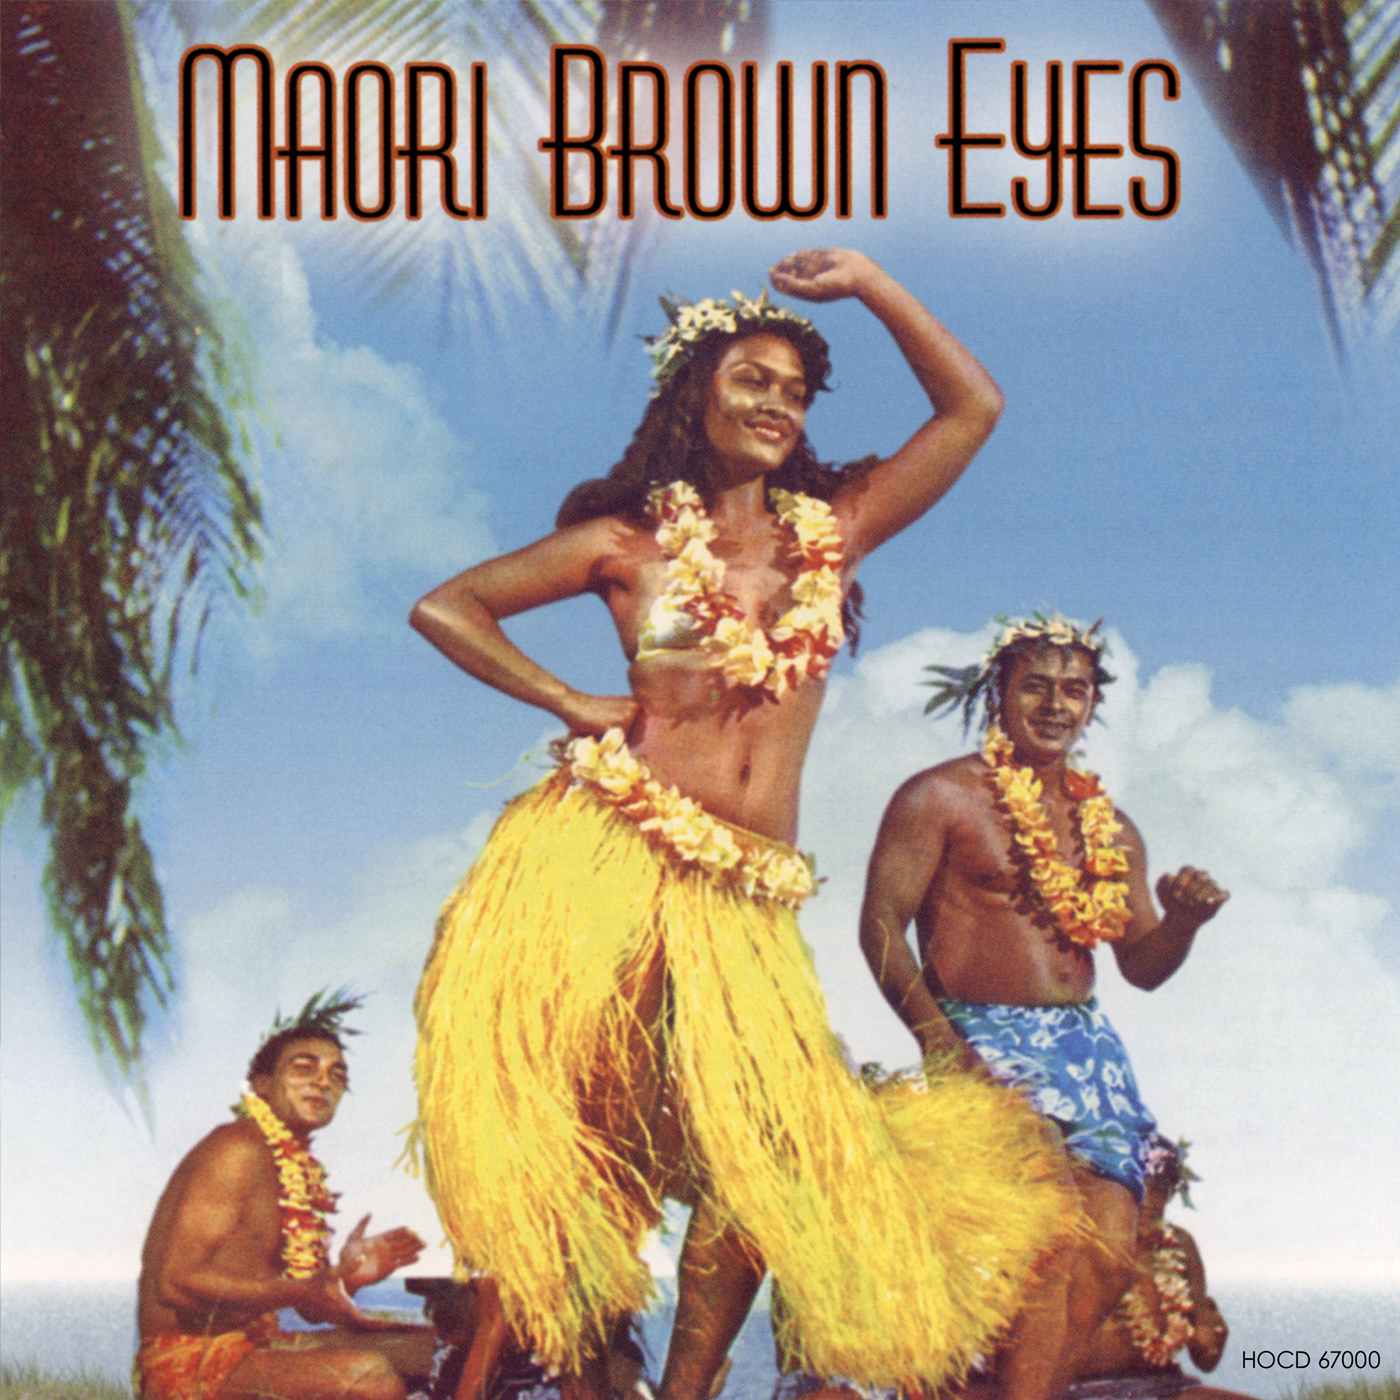 Maori Brown Eyes